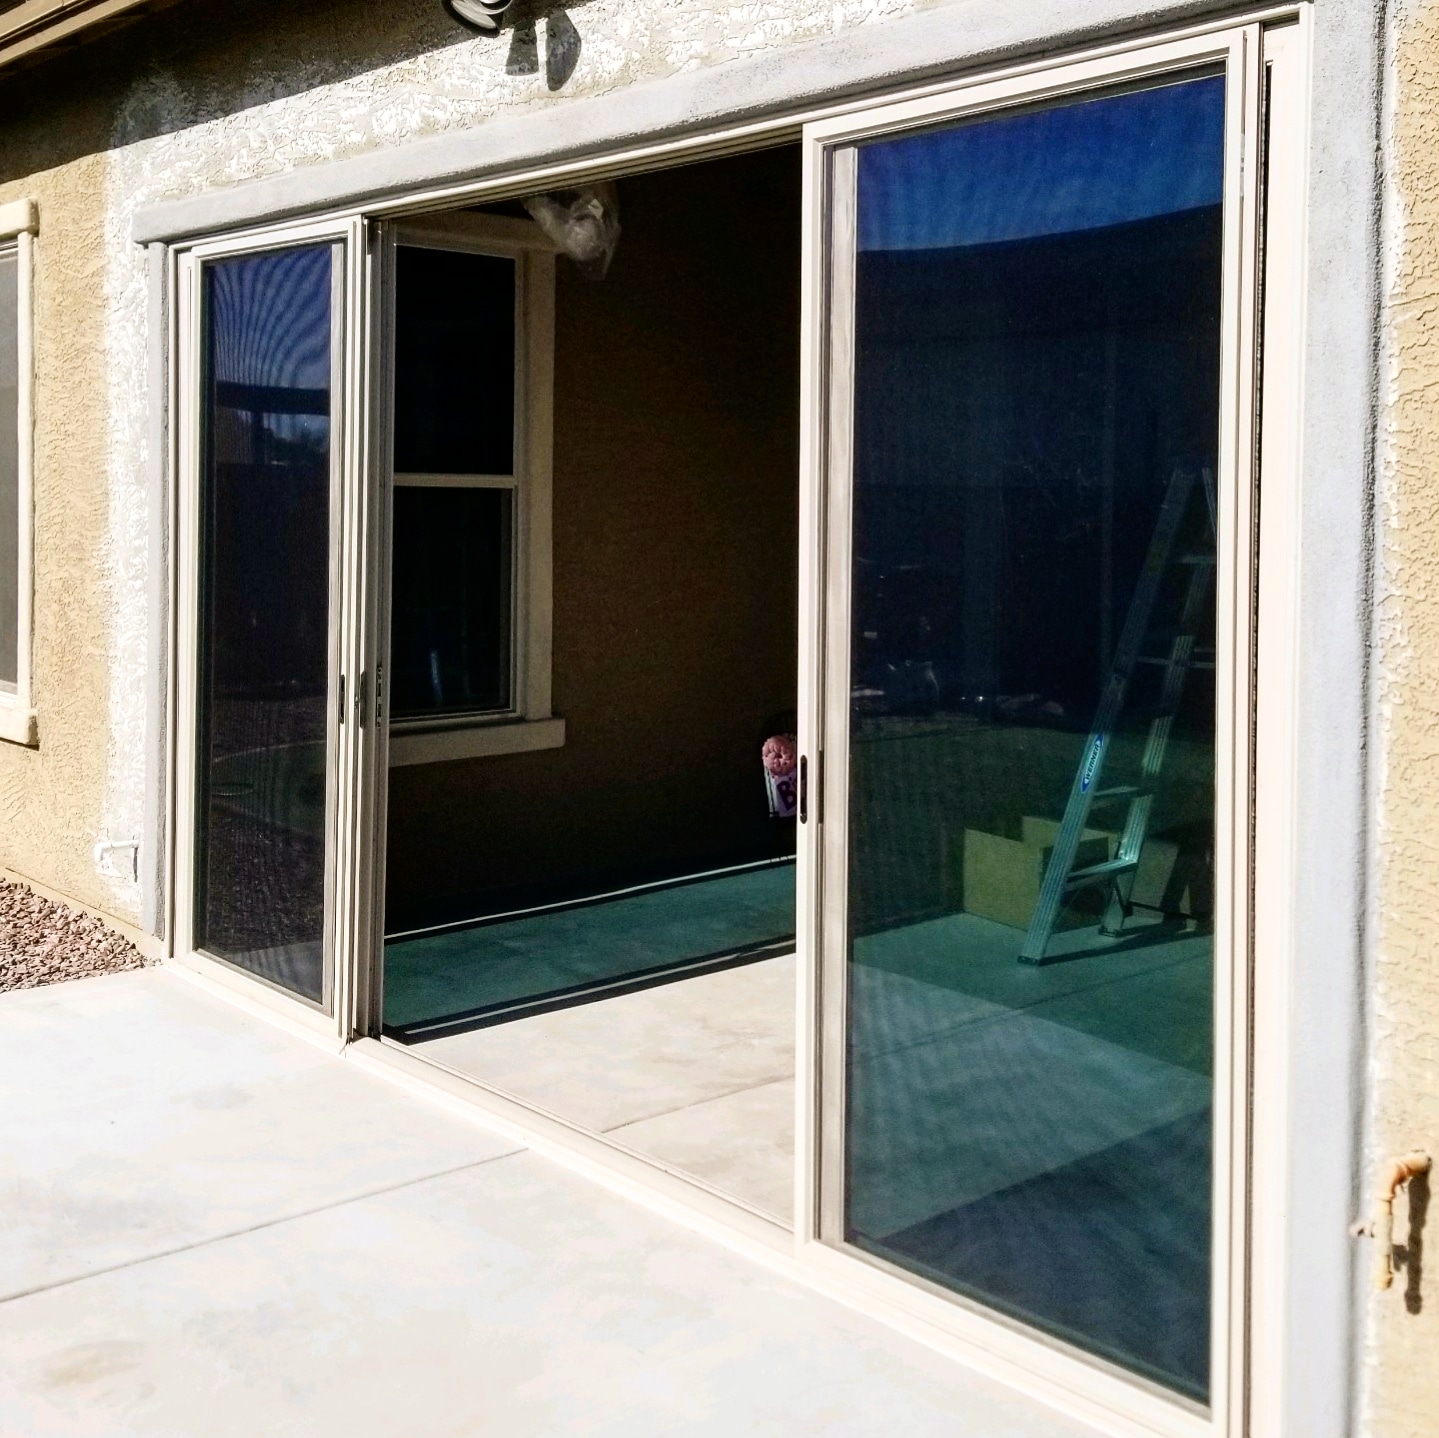 Arizona Window and Door in Scottsdale and Tucson showing back sliding door of home